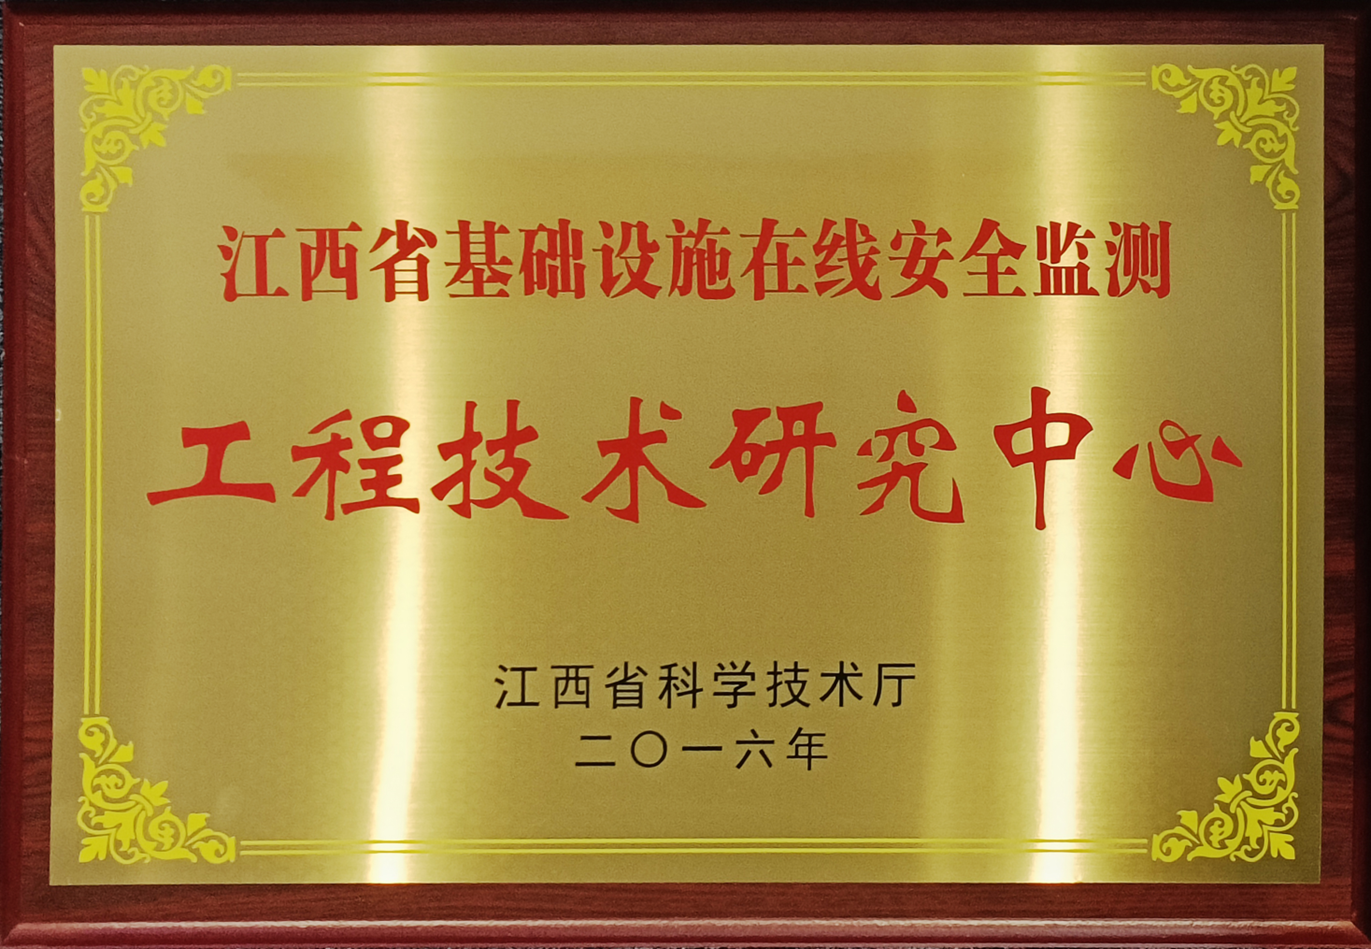 江西省基礎設施在線安全監測工程技術研究中心